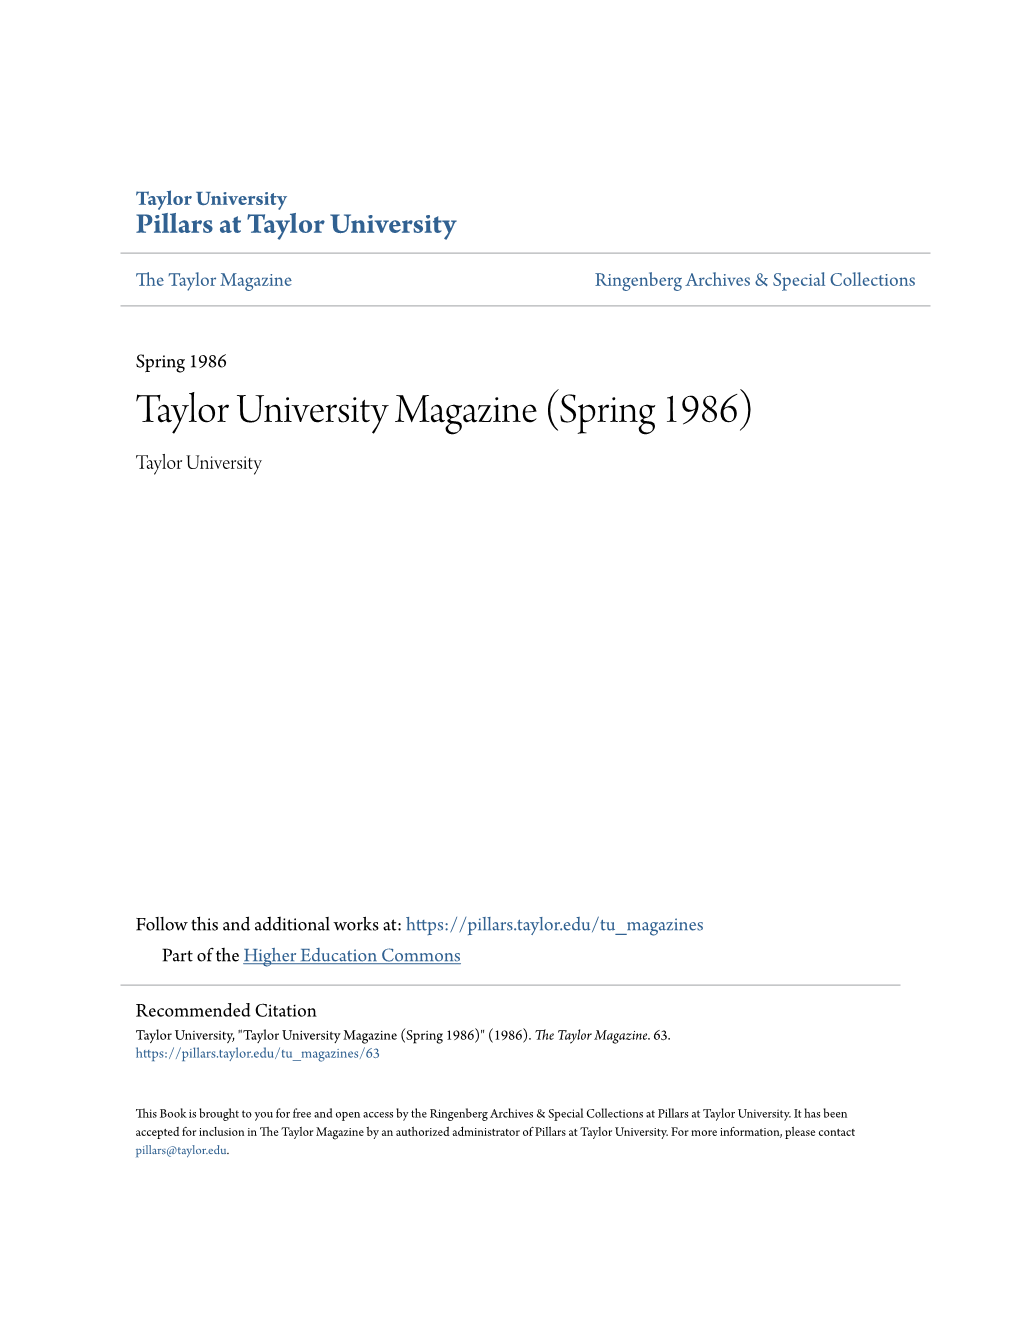 Taylor University Magazine (Spring 1986) Taylor University